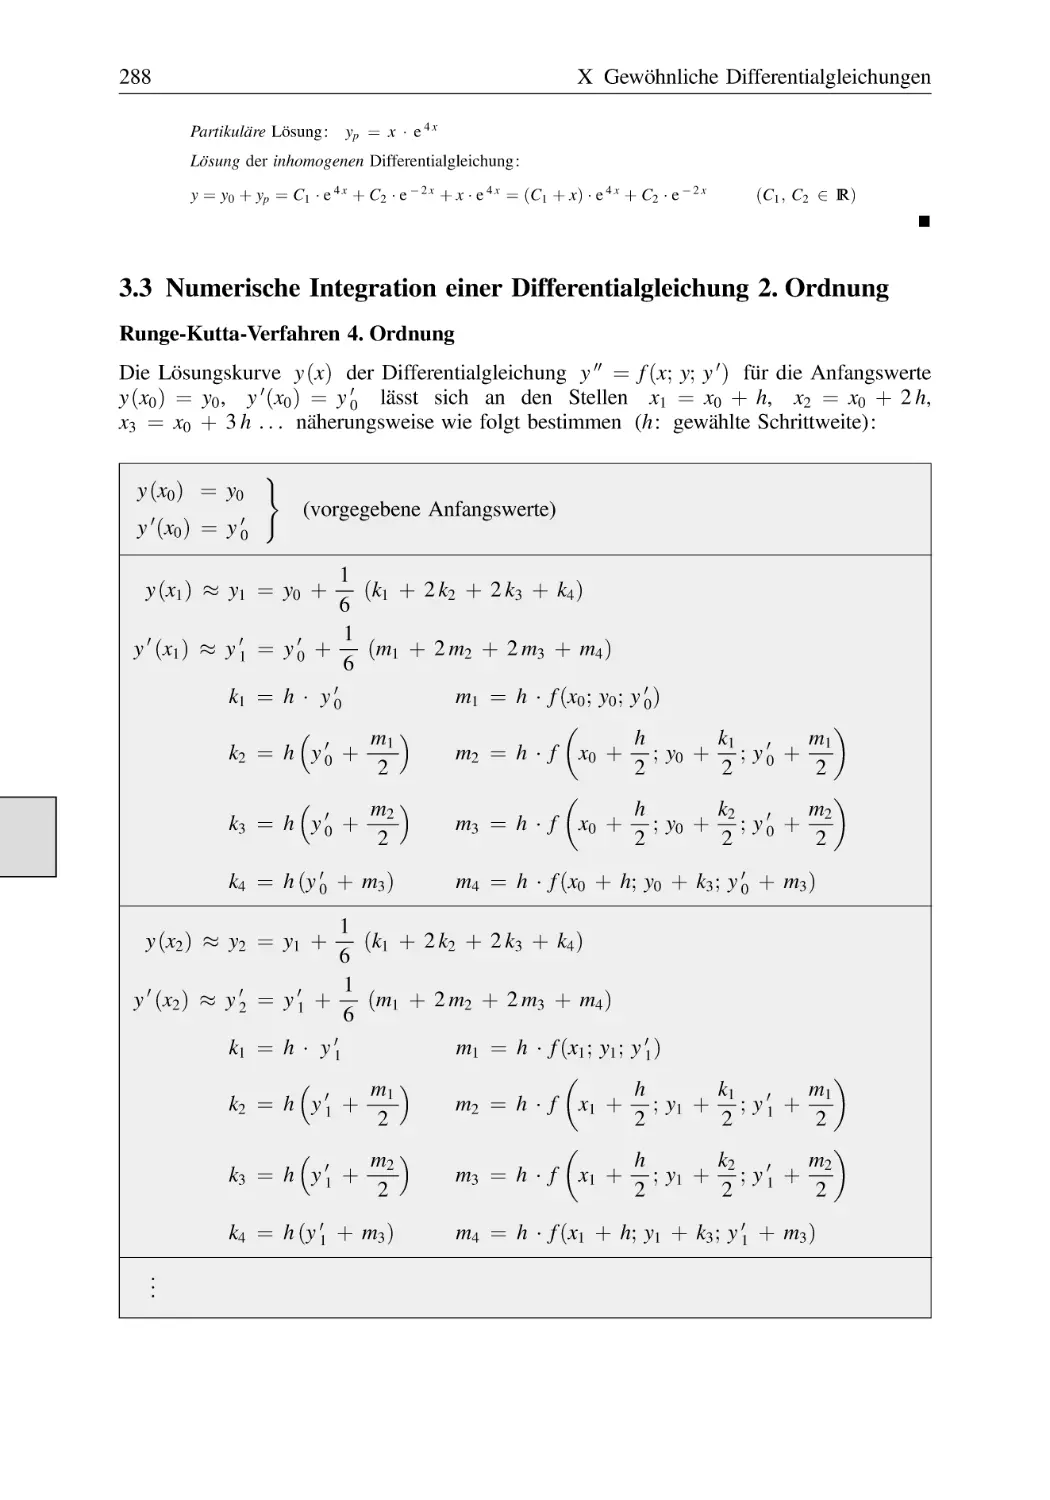 3.3 Numerische Integration einer Differentialgleichung 2. Ordnung